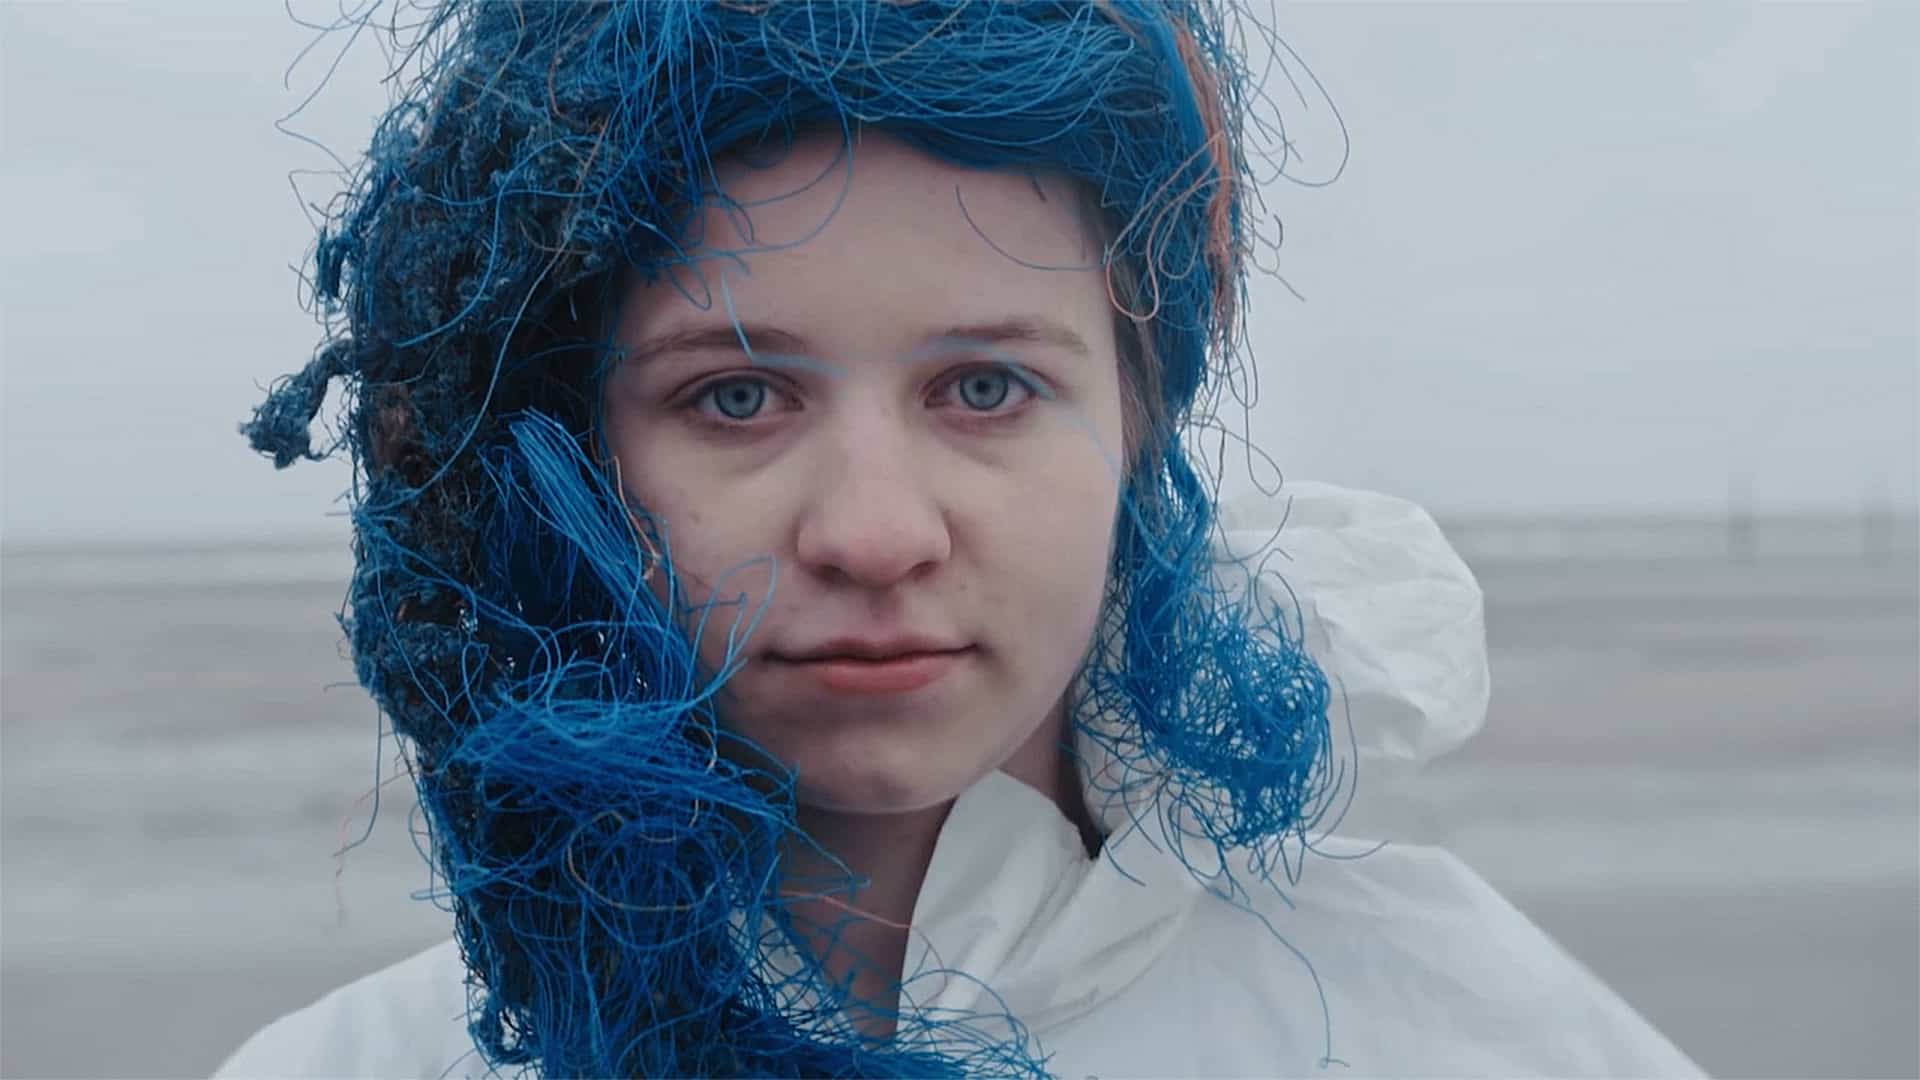 Dead Sea Kunst für die Meere TV-Doku Mehrteiler, SKY Arts - Darstellerin mit blauen Haaren - Filmproduktion hawkins.film